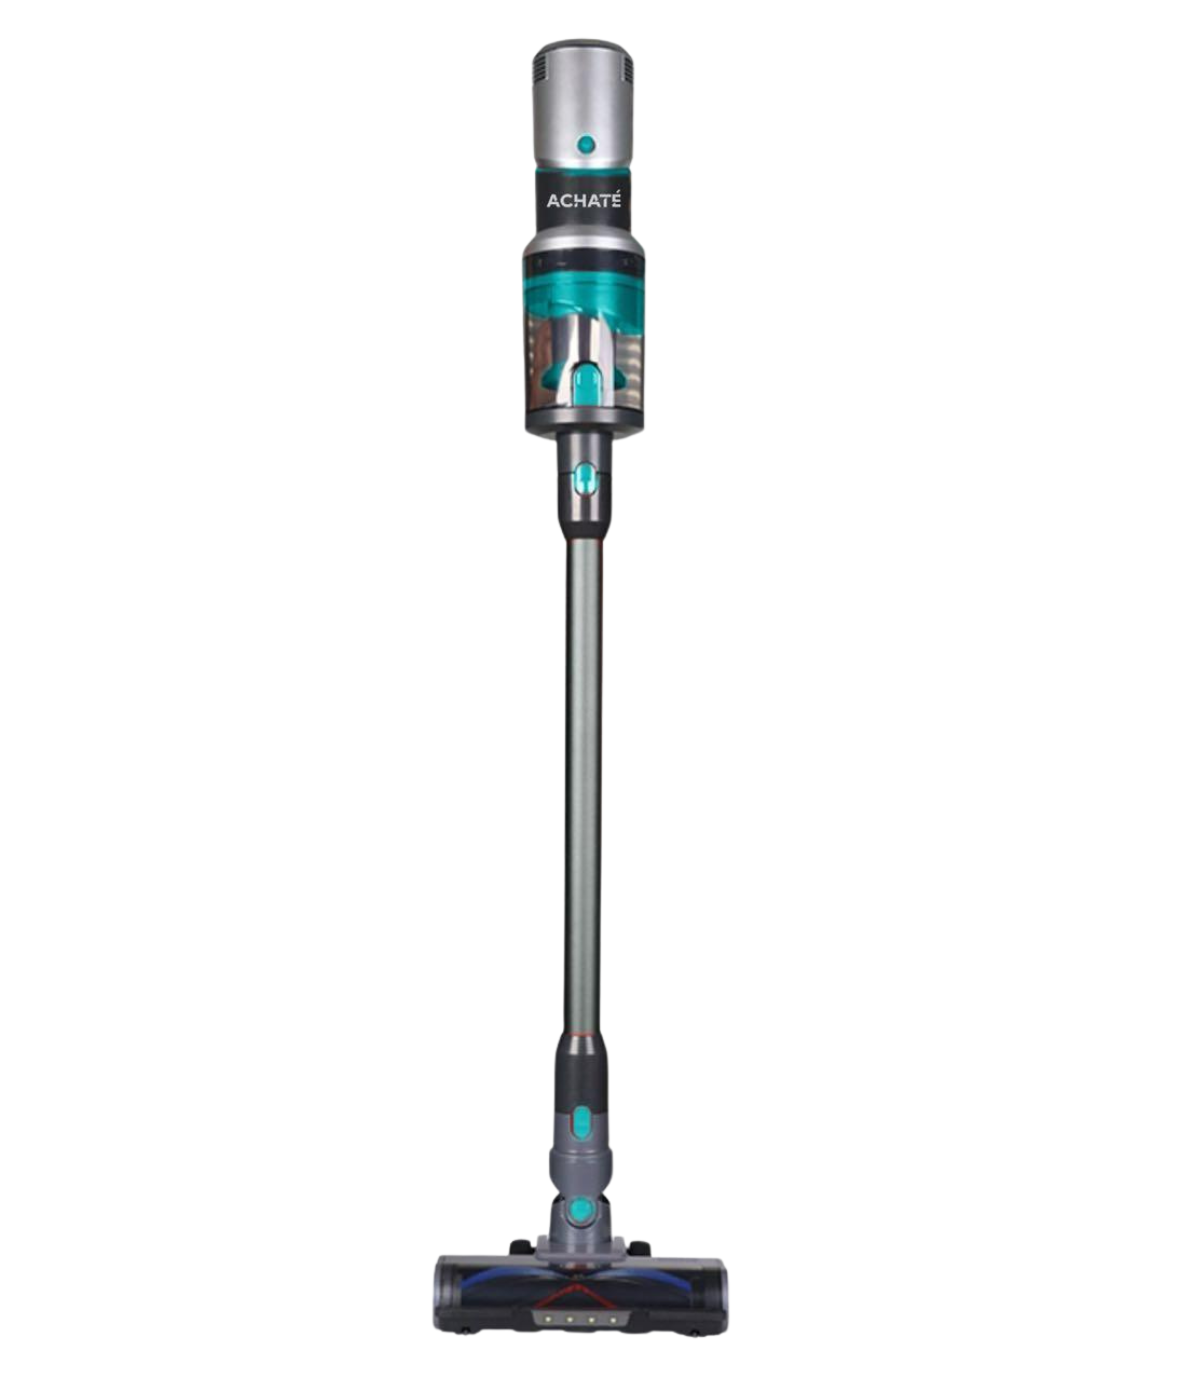 Achaté Stick vacuum cleaner